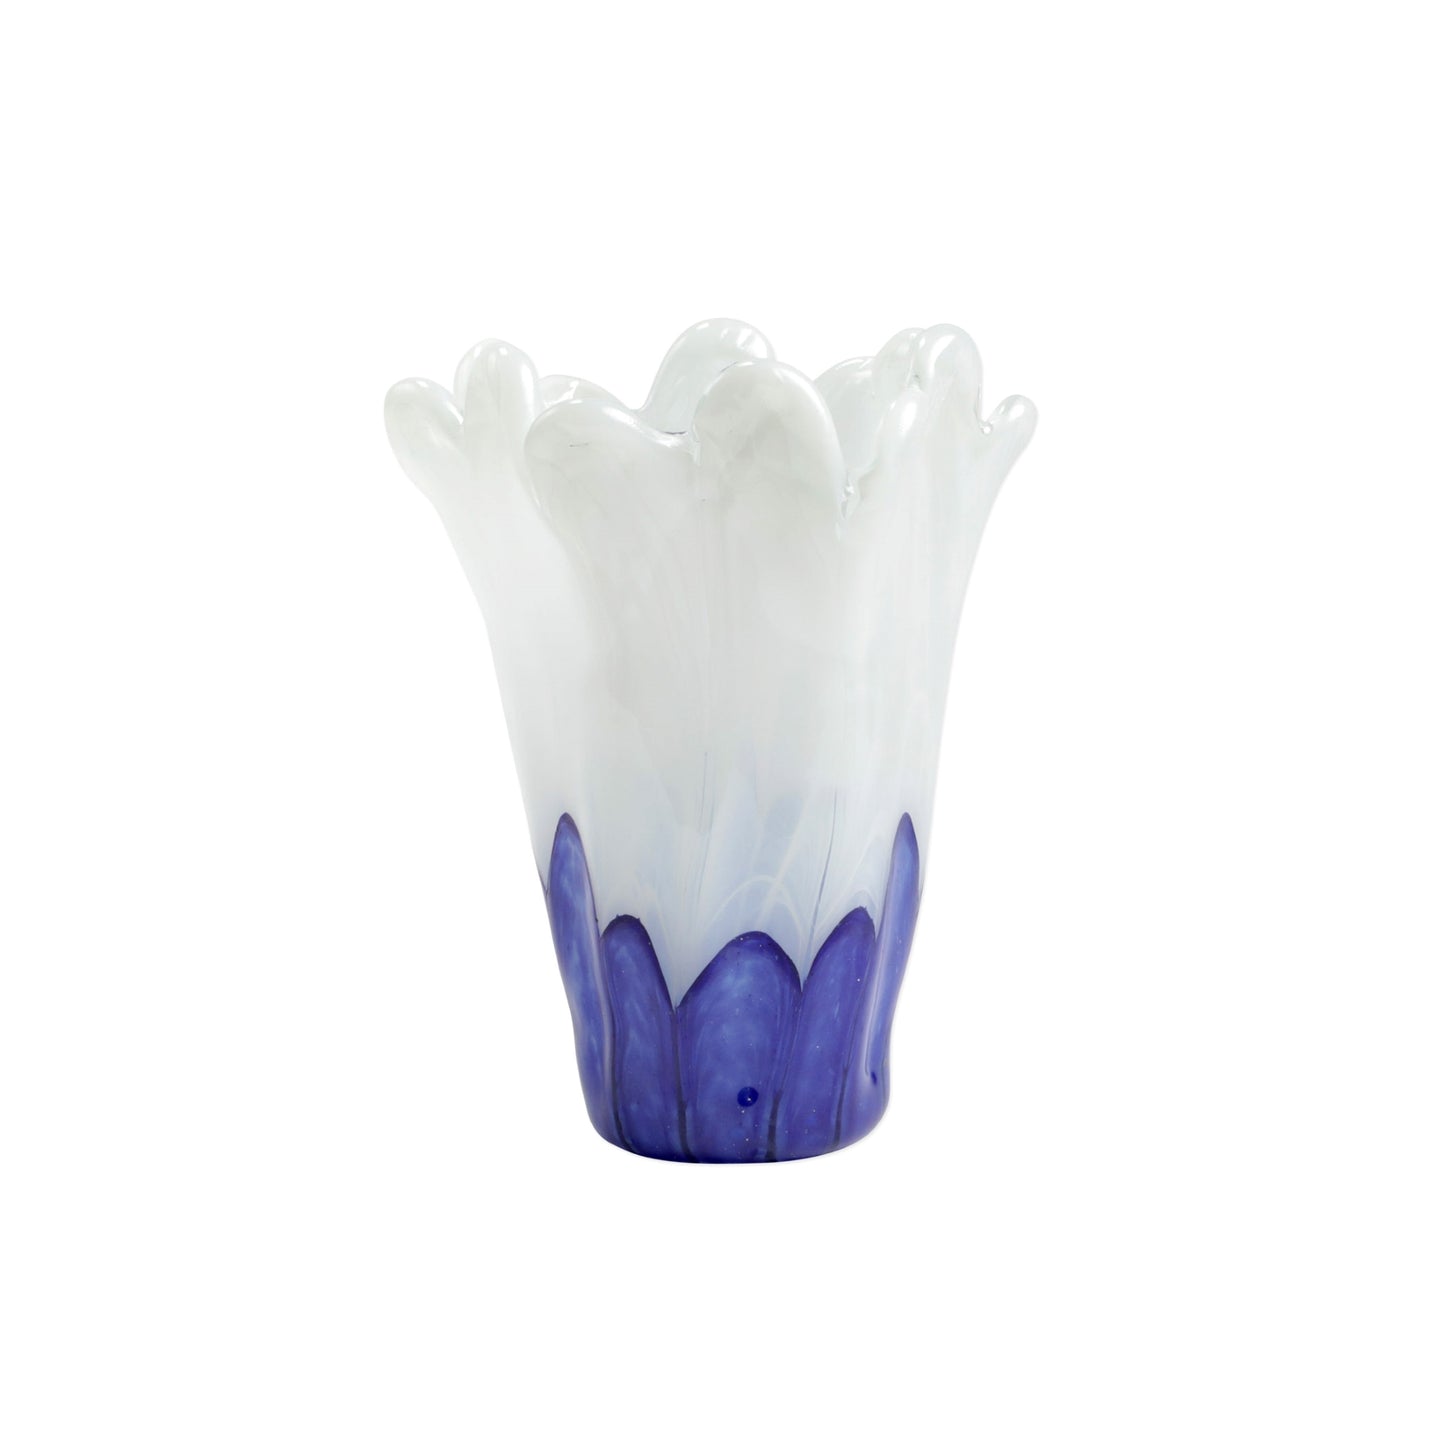 Vietri Onda Glass Cobalt and White Medium Vase 8.5"L, 8.5"W, 10.75"H Glass Decor